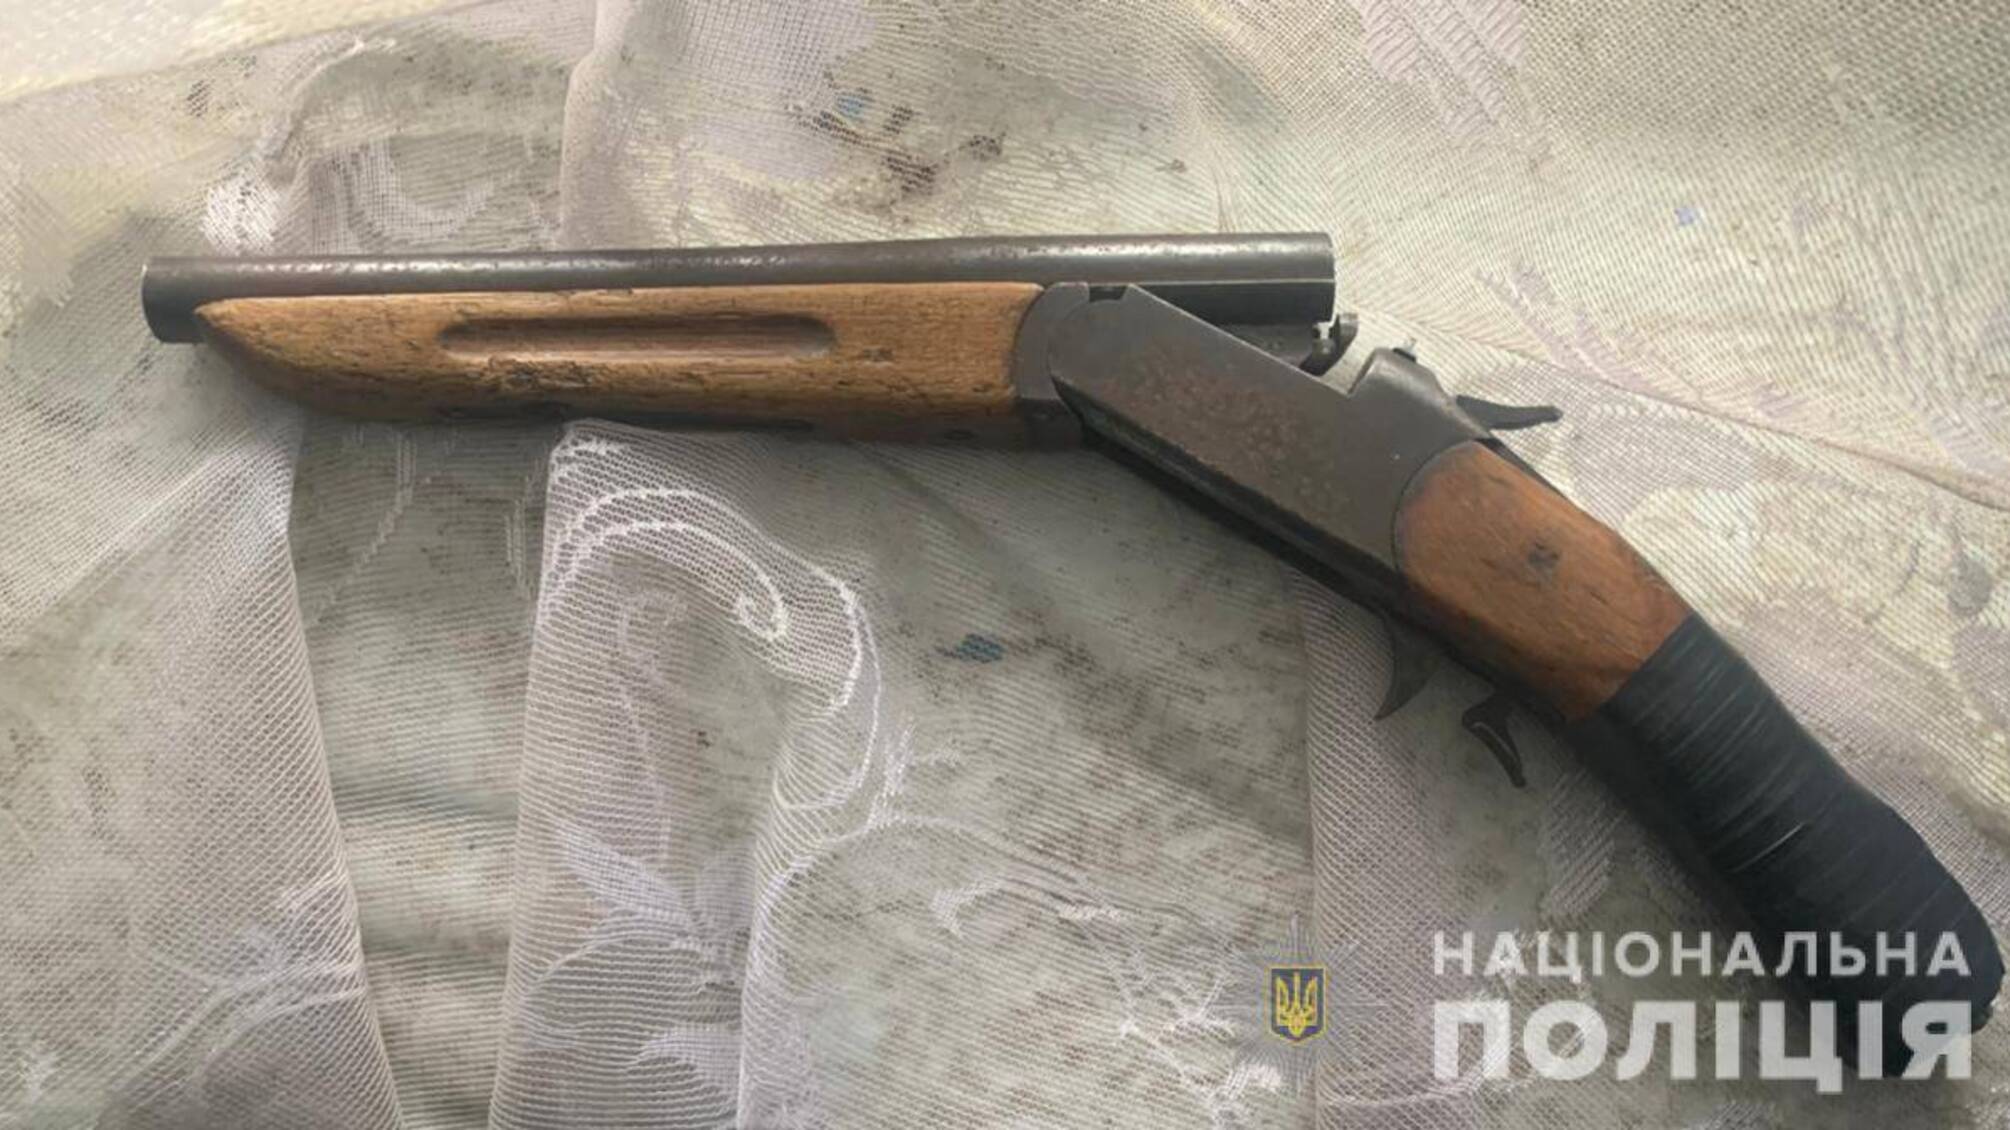 Поліцейські вилучили зброю у жителя Білгород-Дністровського району